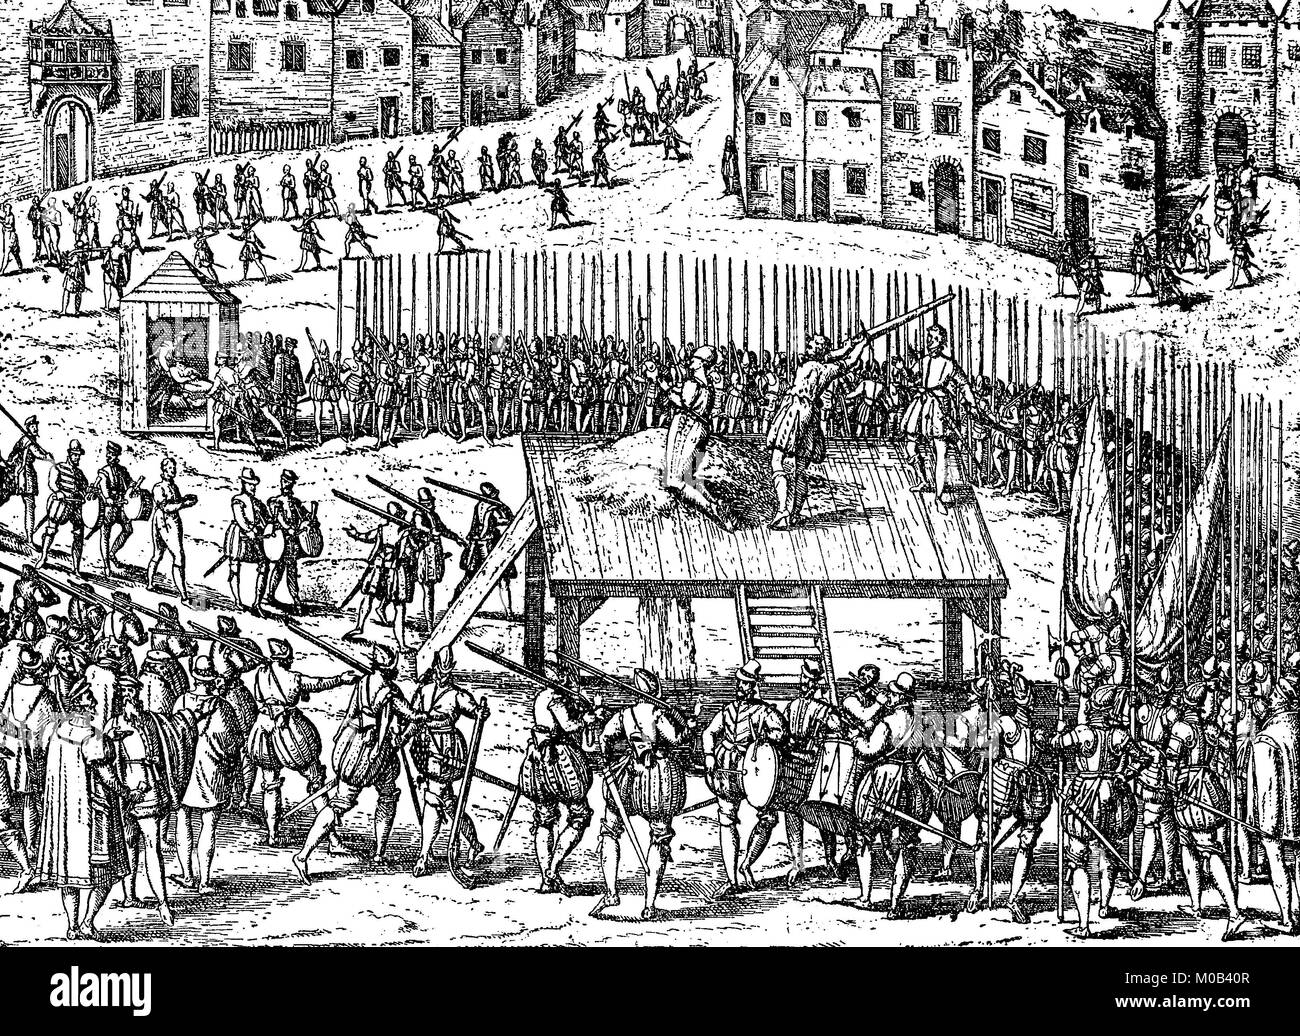 Ausführung der Adel nach dem Genuss von Albas, am Roßmarkt in Brüssel, 1572 Belgien, digital verbesserte Reproduktion einer Vorlage drucken von 1880 Stockfoto